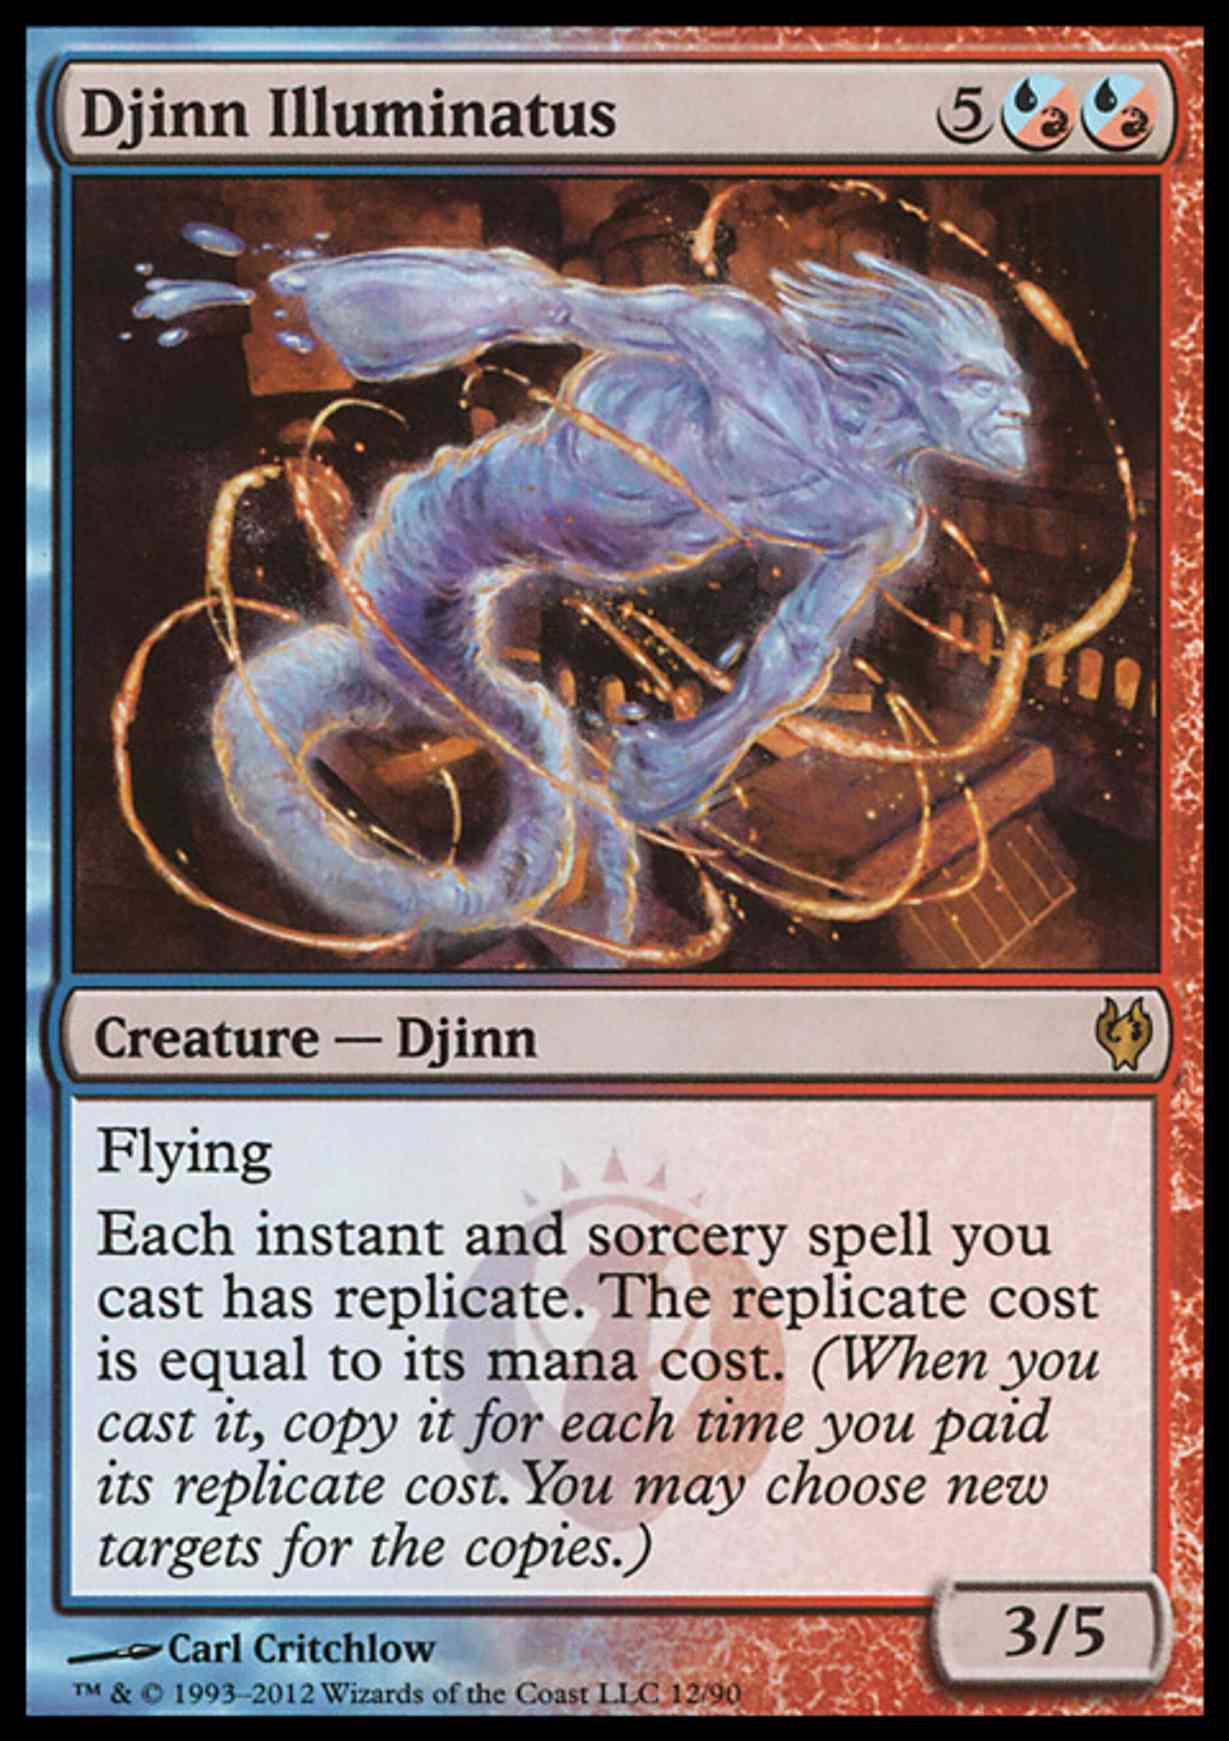 Djinn Illuminatus magic card front